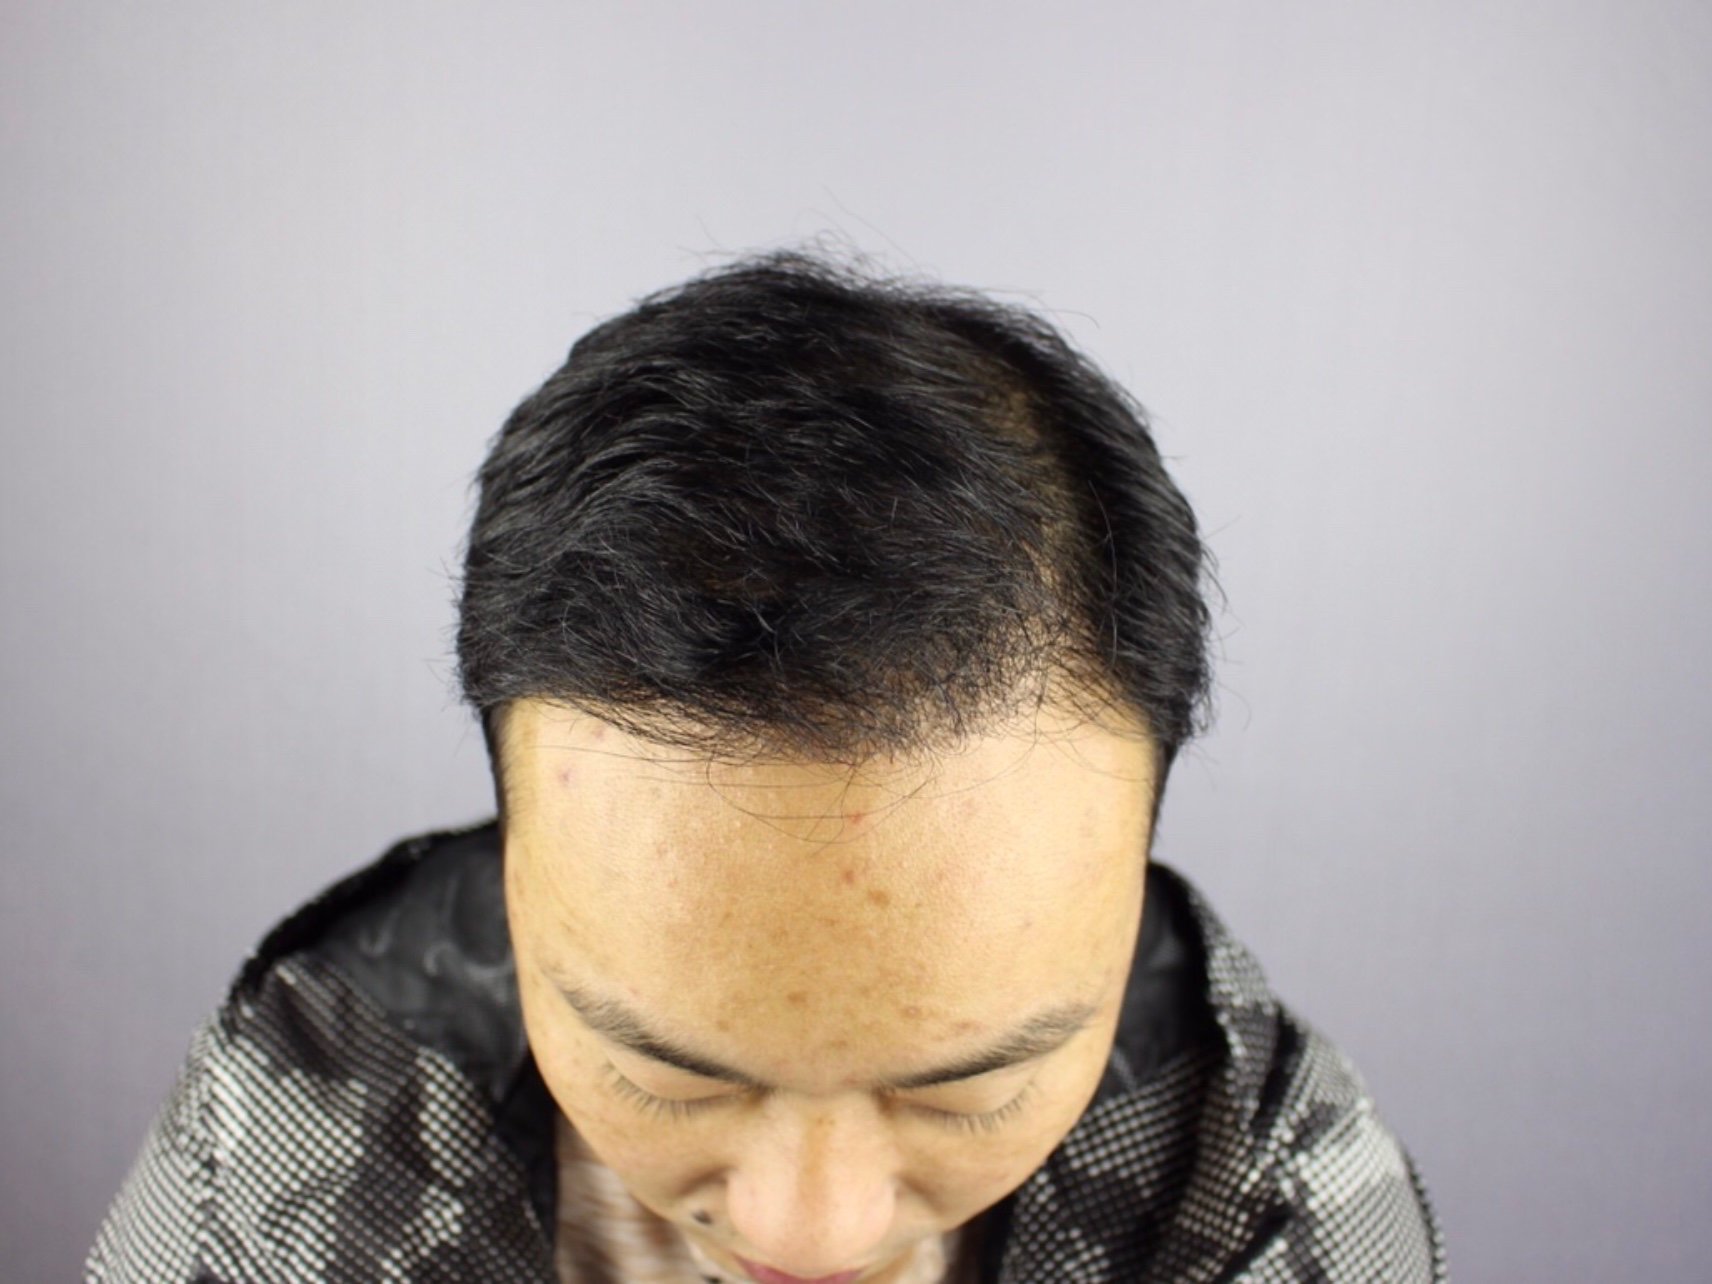 斑秃,俗称鬼剃头, 是一种比较特殊的脱发,患者头顶突然出现圆形或